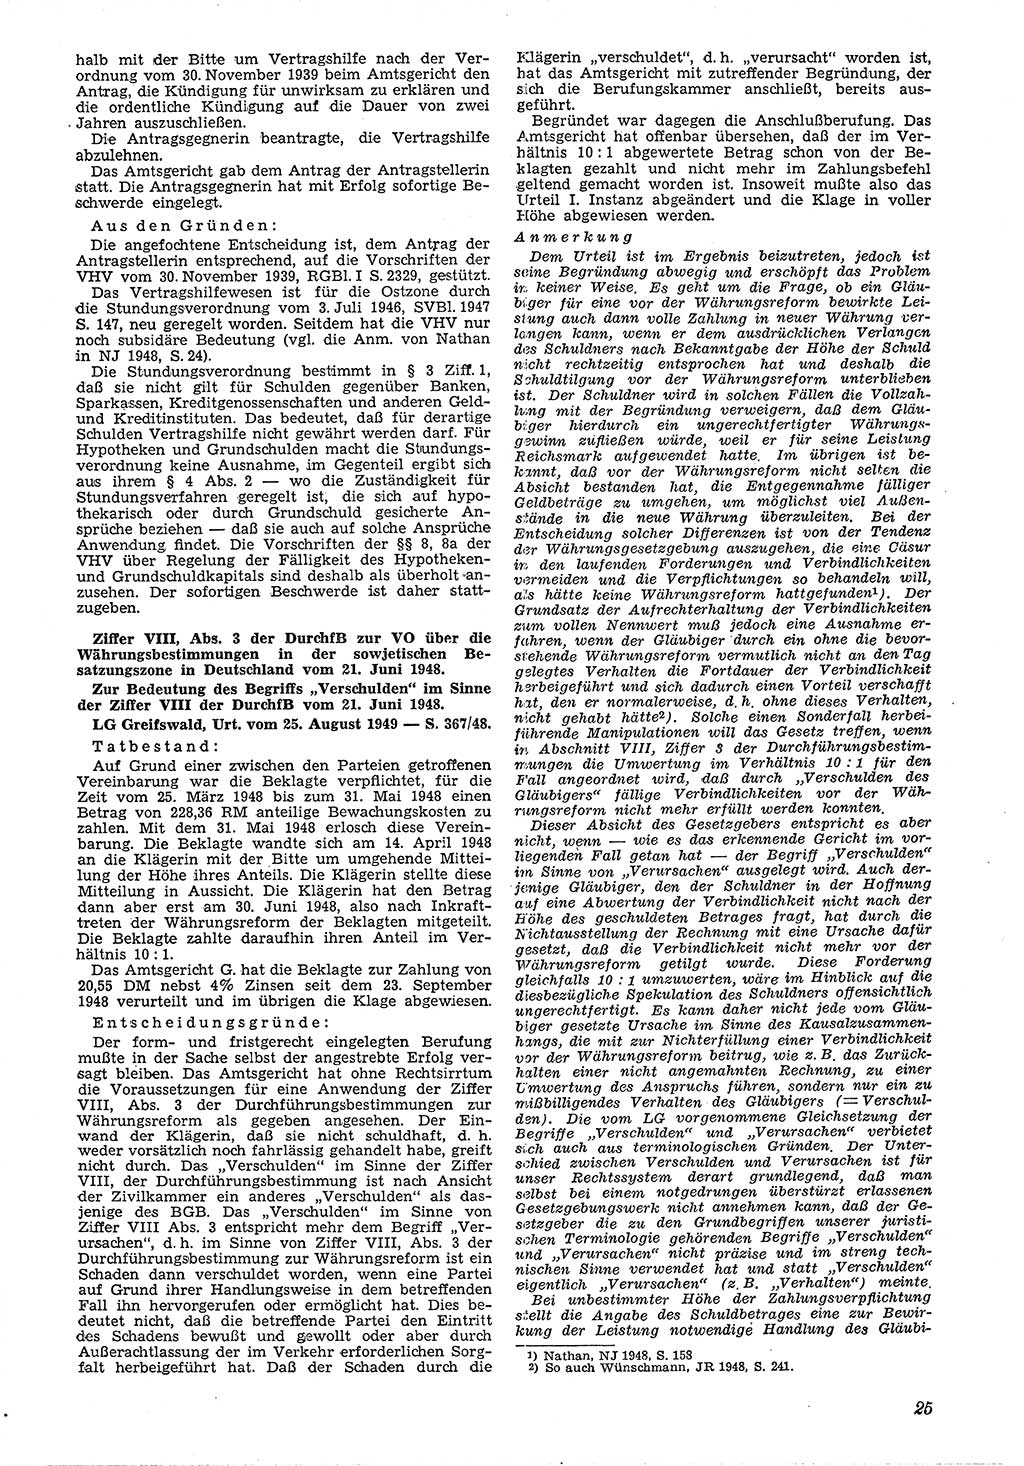 Neue Justiz (NJ), Zeitschrift für Recht und Rechtswissenschaft [Deutsche Demokratische Republik (DDR)], 4. Jahrgang 1950, Seite 25 (NJ DDR 1950, S. 25)